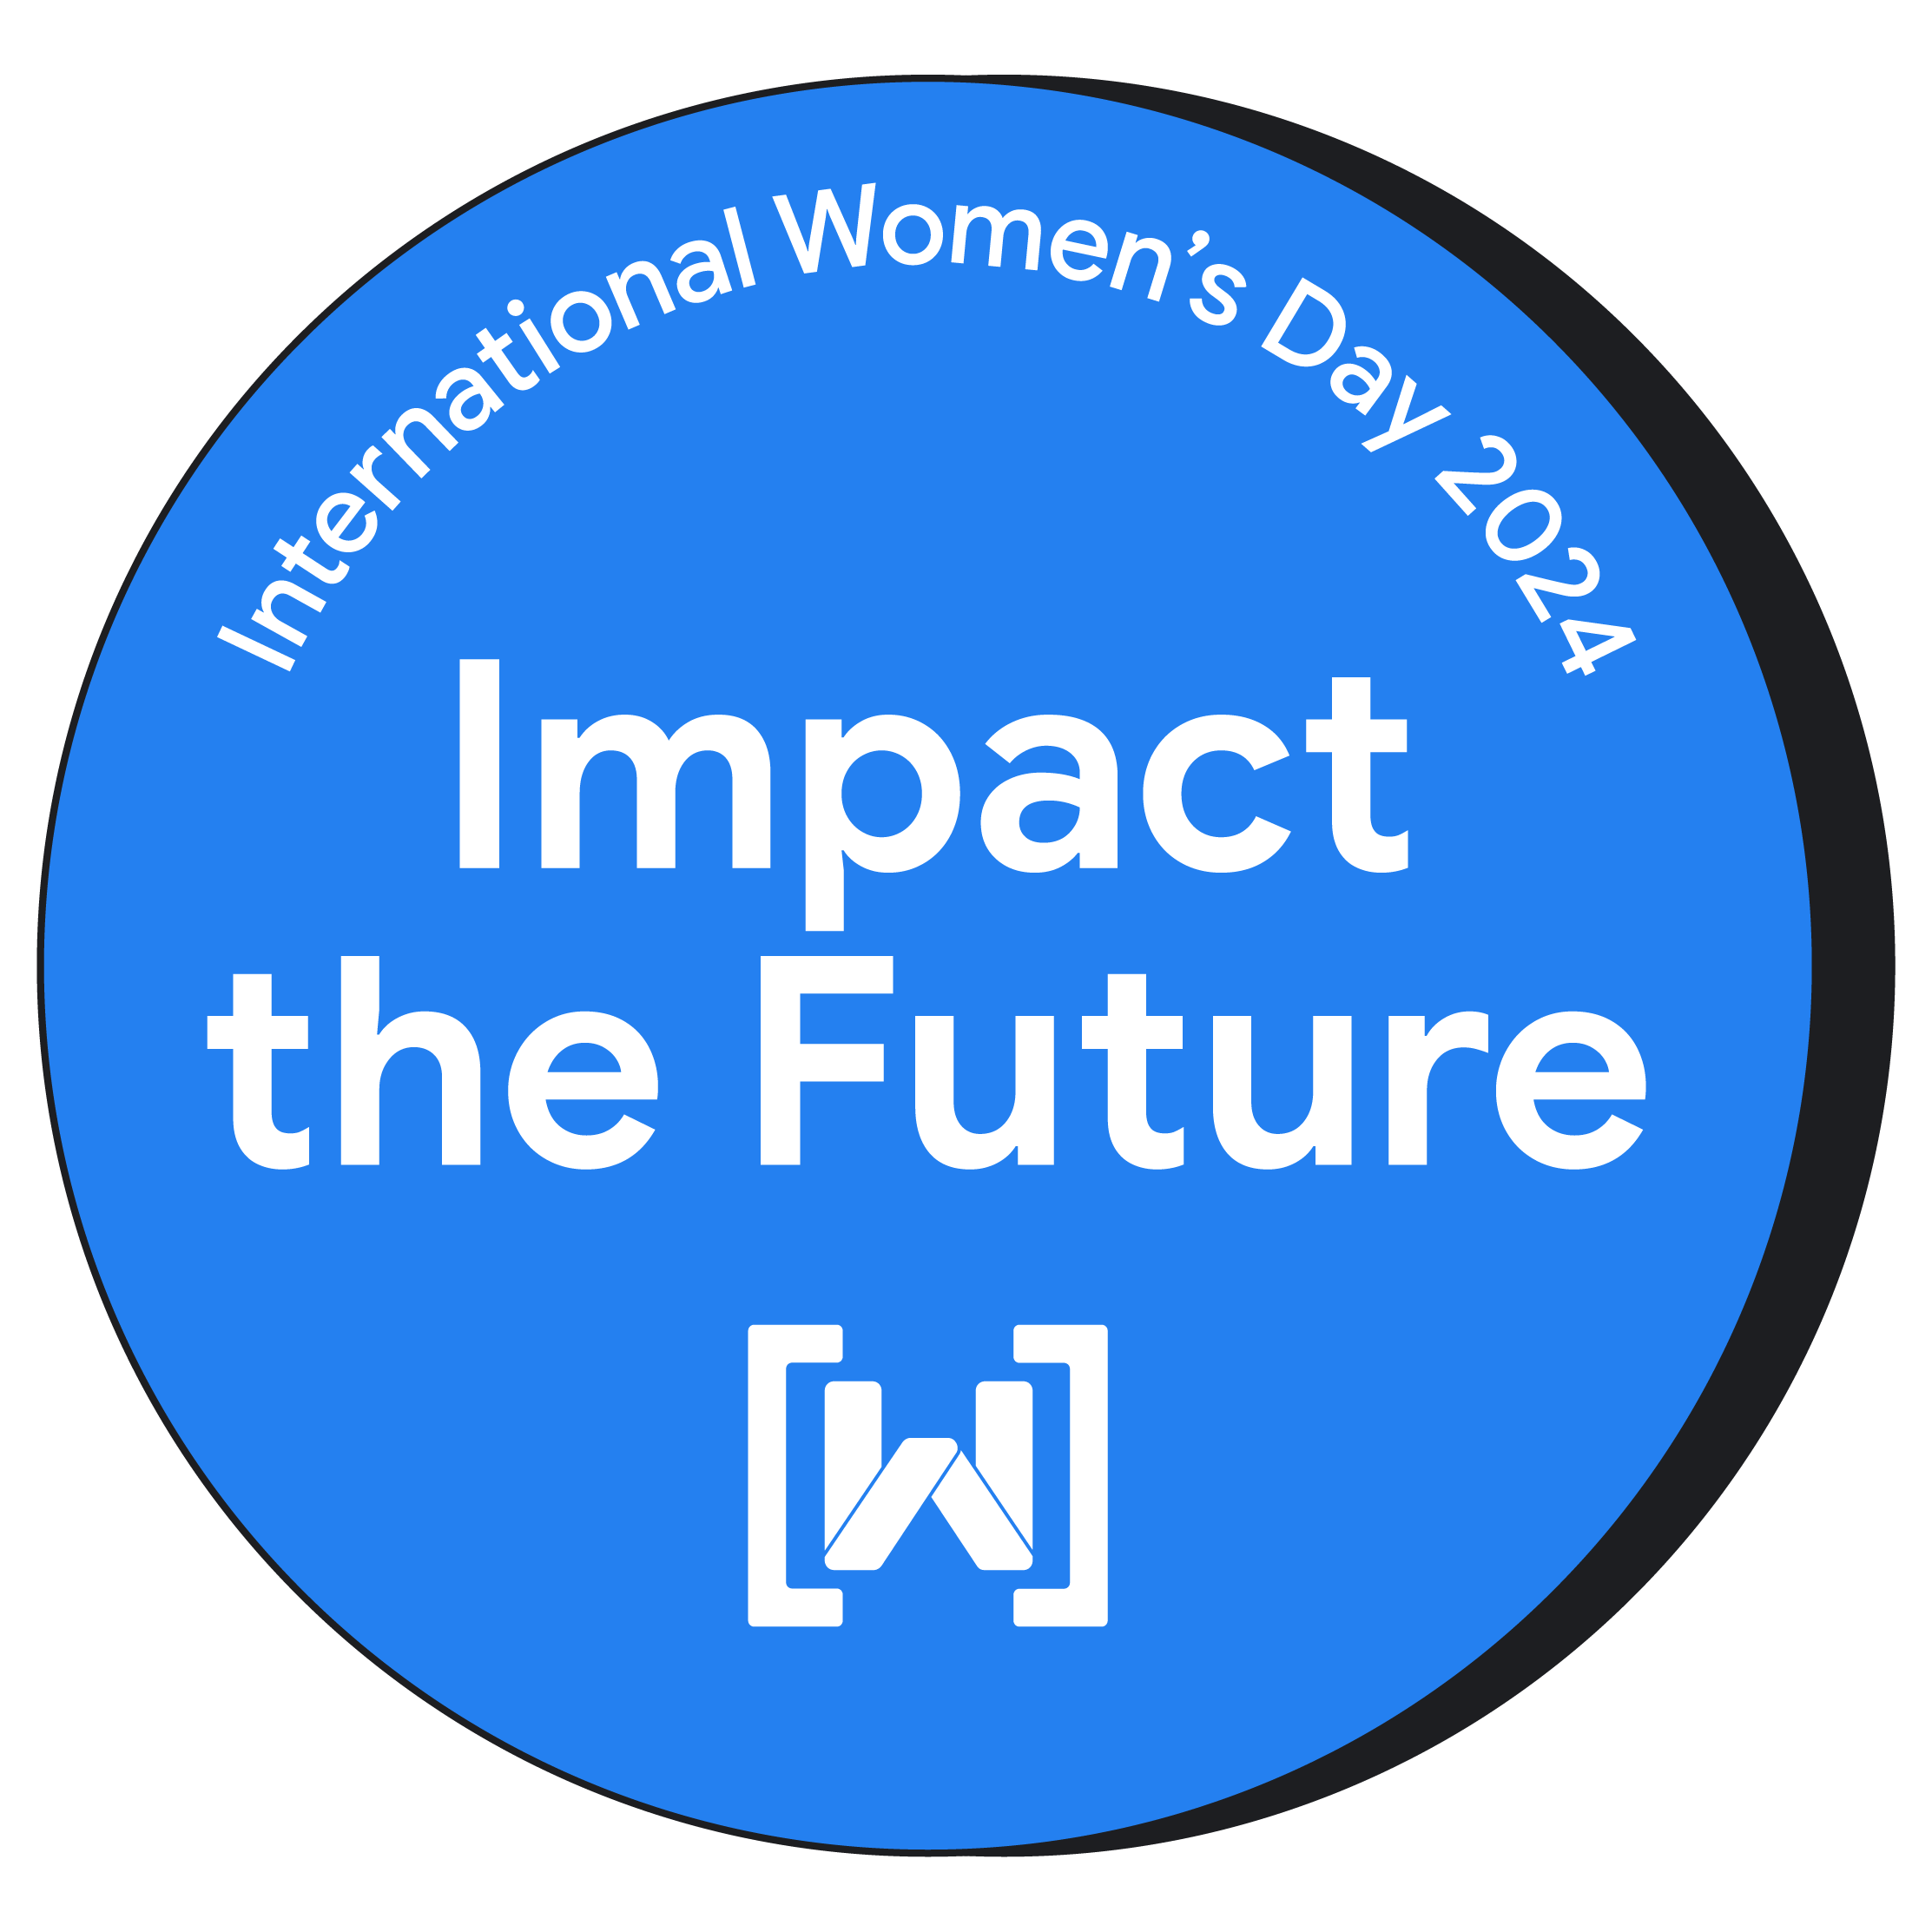 अंतरराष्ट्रीय महिला दिवस 2024 का जश्न मनाने के लिए, गोल आकार का बैज. इस बैज के बैकग्राउंड में चमकदार नीले रंग का बैकग्राउंड है. साथ ही, बीच में &#39;आने वाले समय को प्रभावित करें&#39; टेक्स्ट को प्रमुखता से दिखाया गया है. Women Techmakers का लोगो, बैज के सबसे नीचे मौजूद है.